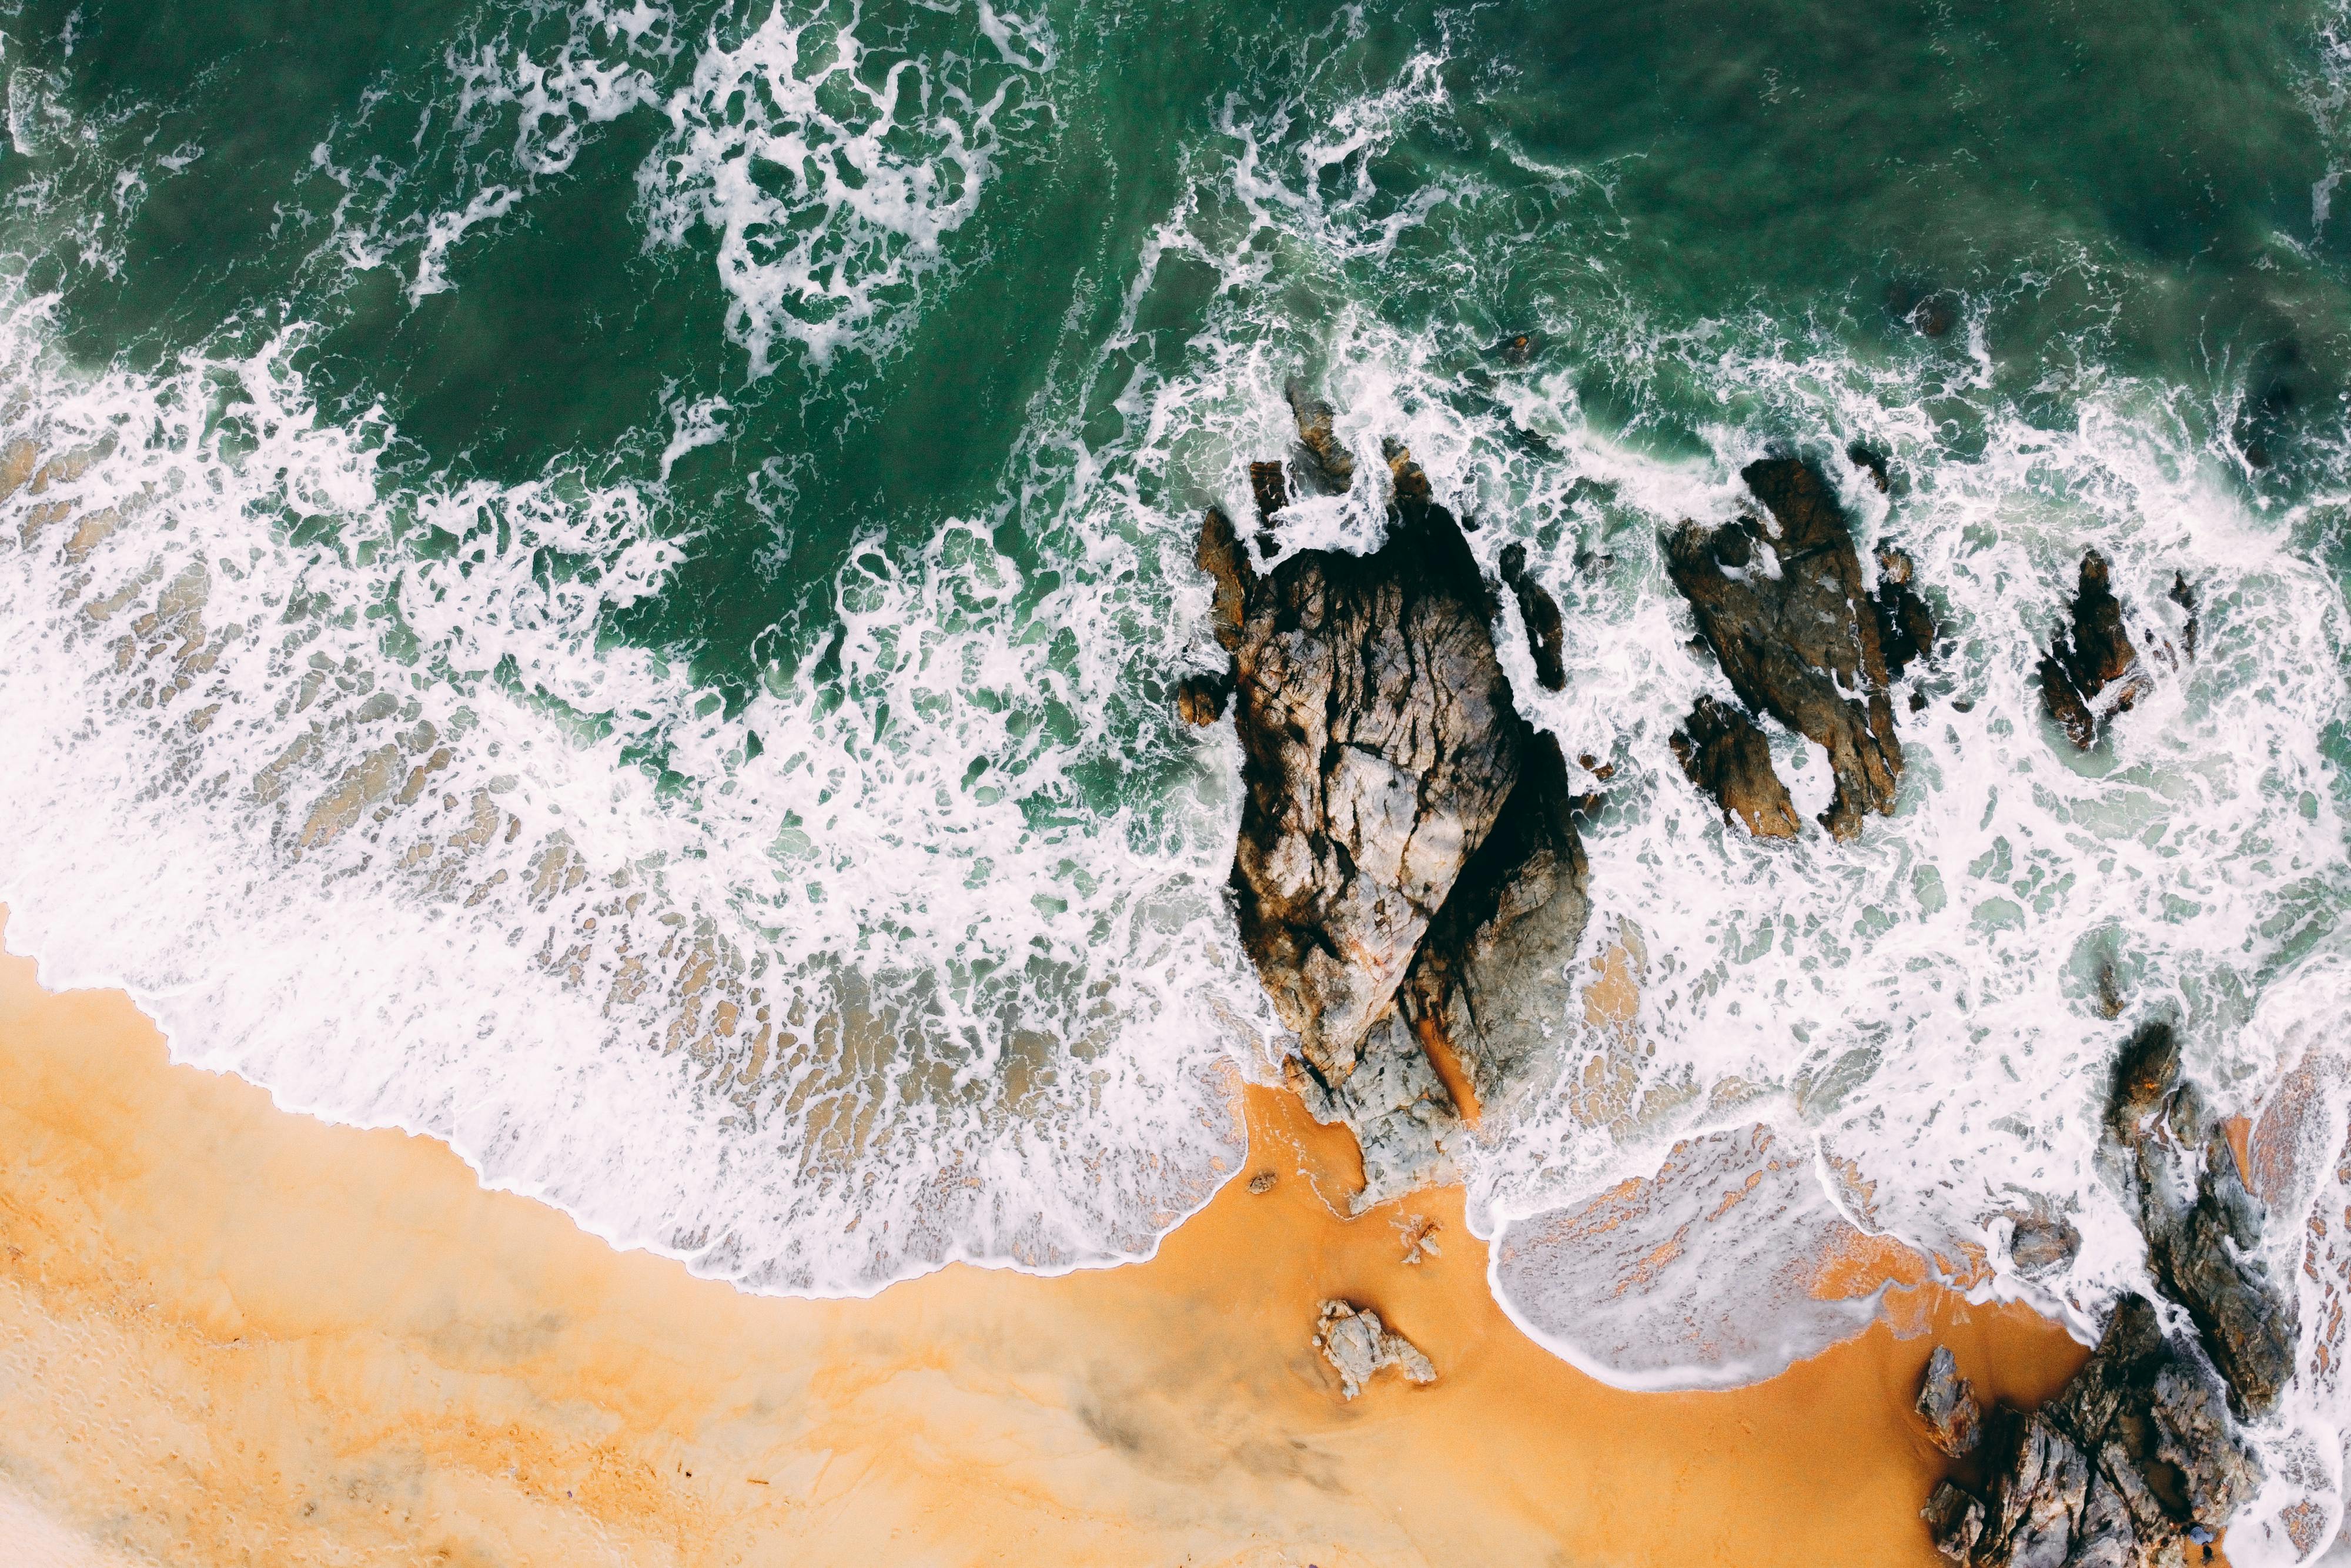 Những bức ảnh của đá và sóng biển sẽ khiến bạn mê mẩn vì sự kết hợp hoàn hảo giữa vẻ đẹp tự nhiên và sức mạnh của biển cả. Nếu bạn yêu thích xploration, hãy thưởng thức những bức ảnh tuyệt vời này và thấy mình được đưa vào thế giới hoang sơ của biển cả. 